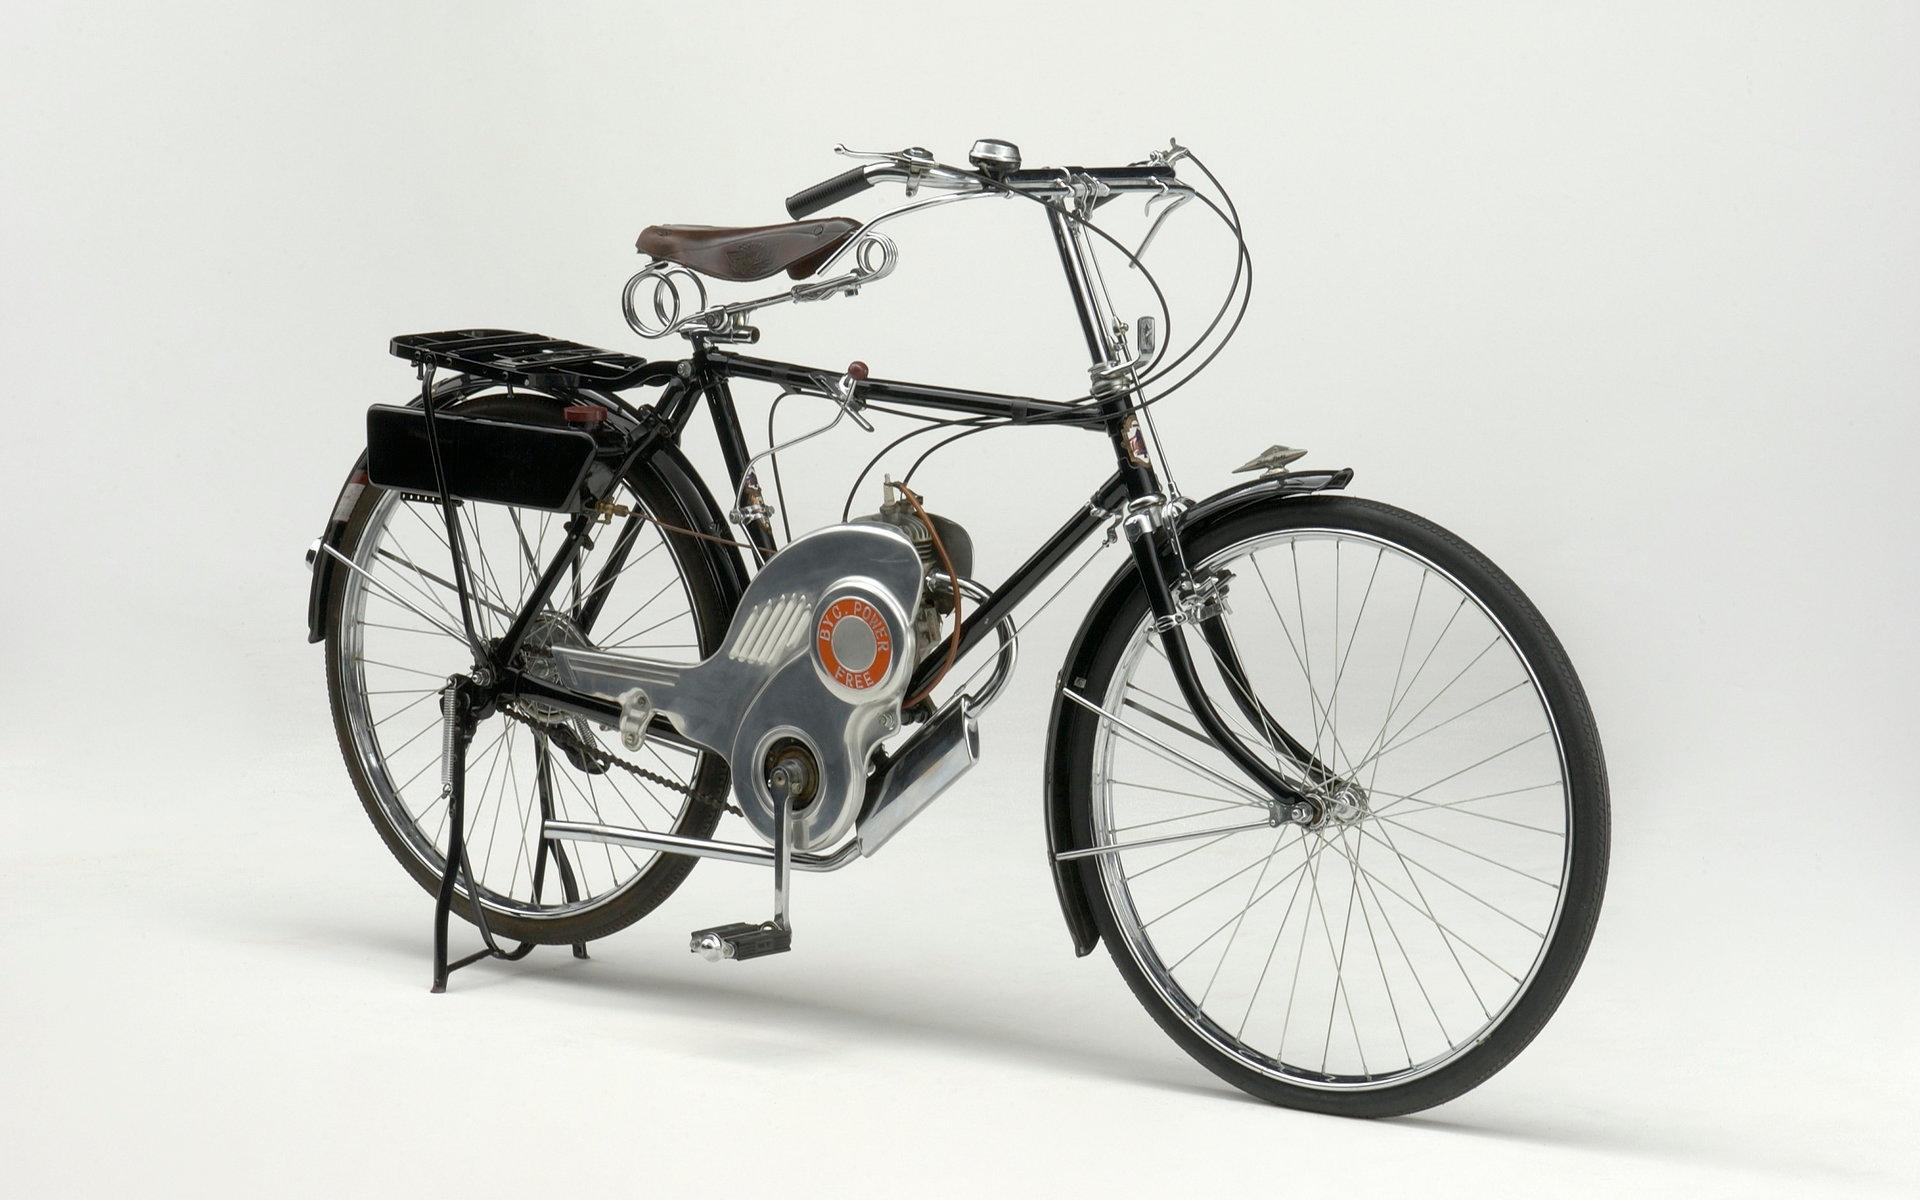 Power Free kom 1952. Föraren kunde välja enbart motor- eller pedaldrift, alternativt en kombination av båda.